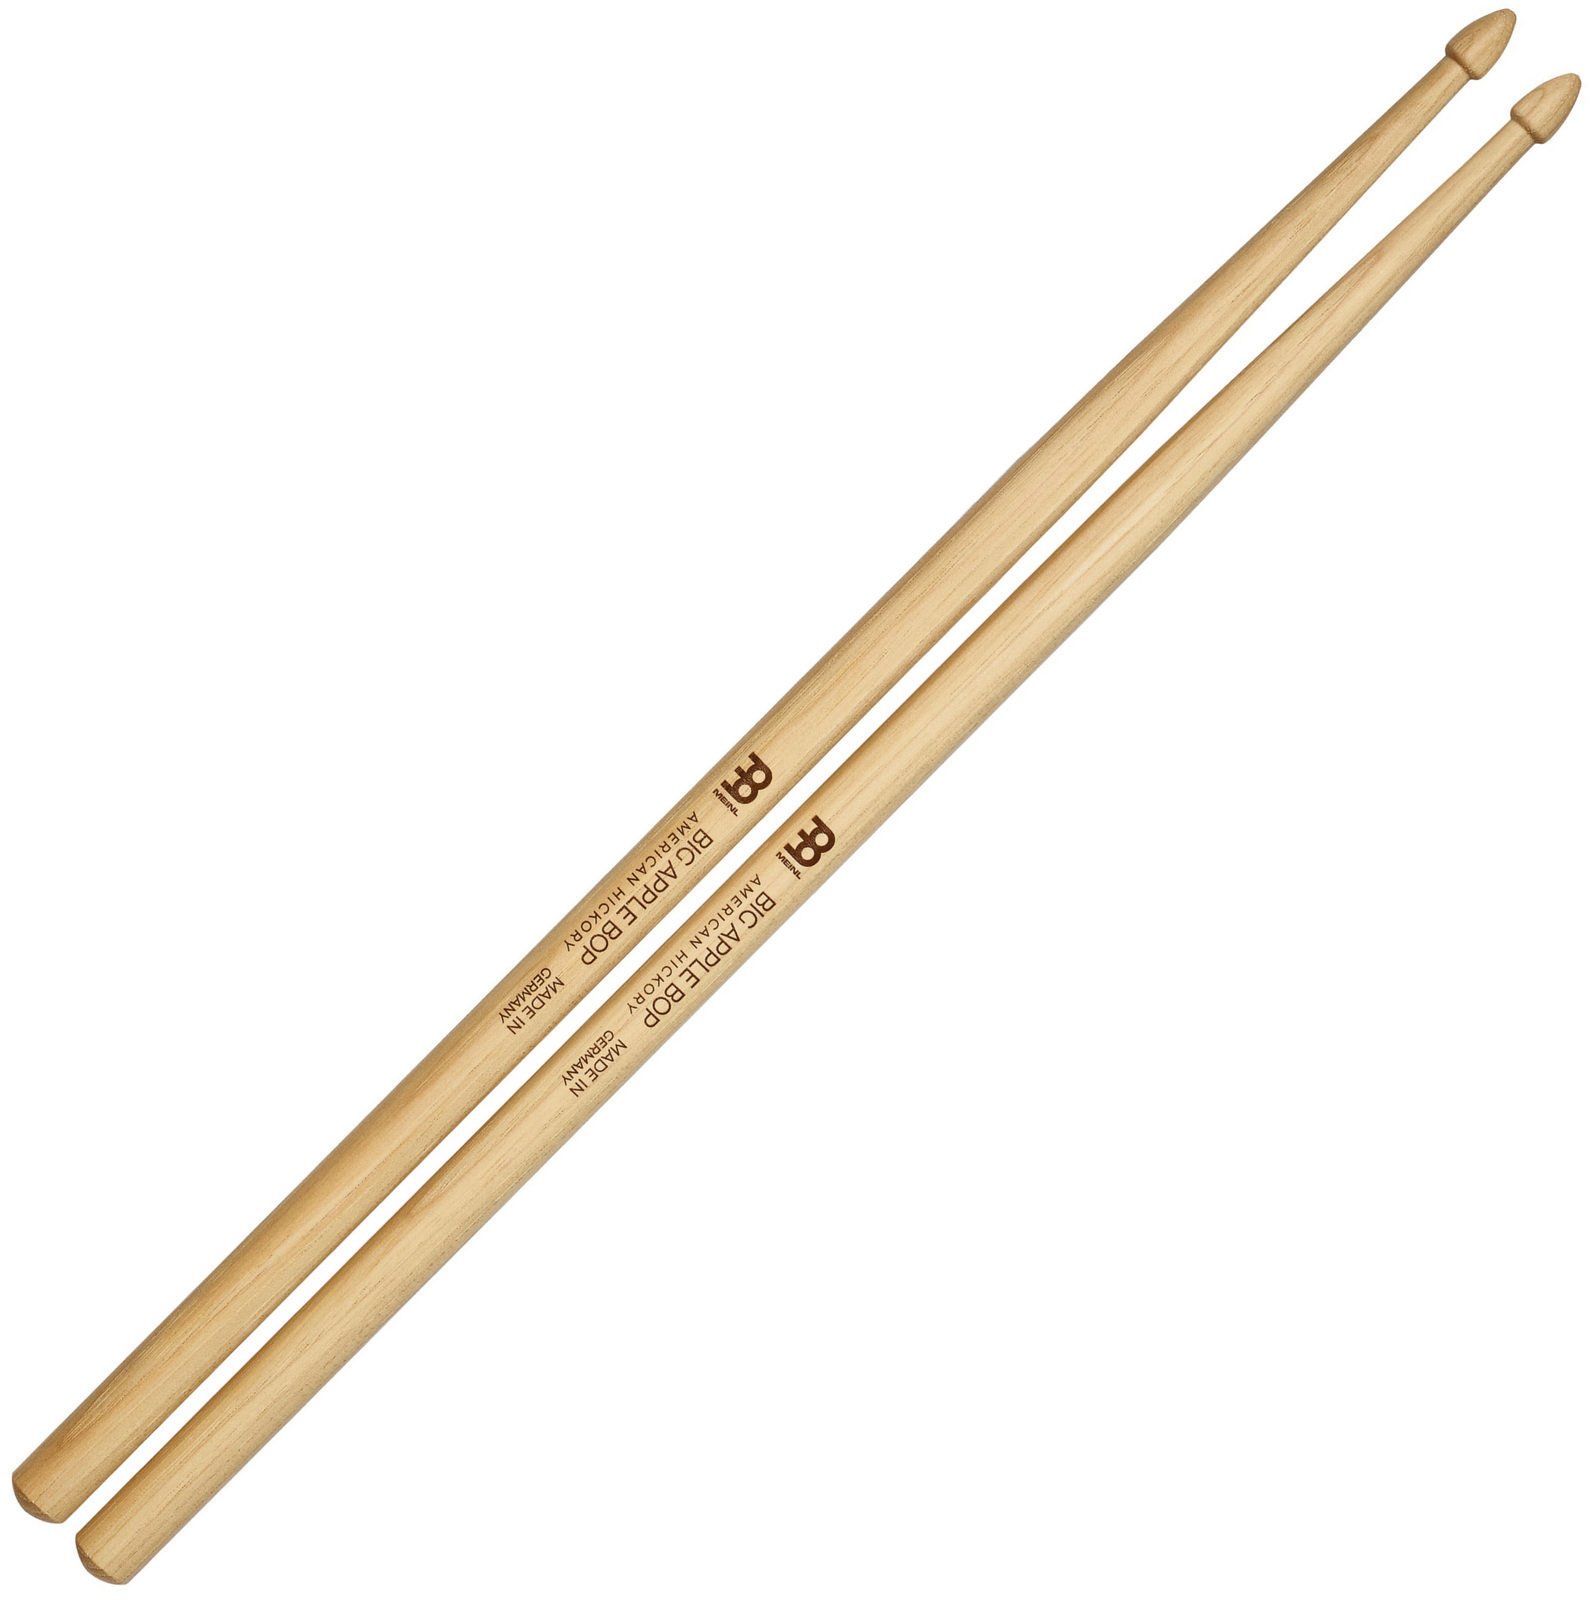 Pałki perkusjne Meinl Big Apple Bop Wood Tip Drum Sticks SB111 Pałki perkusjne